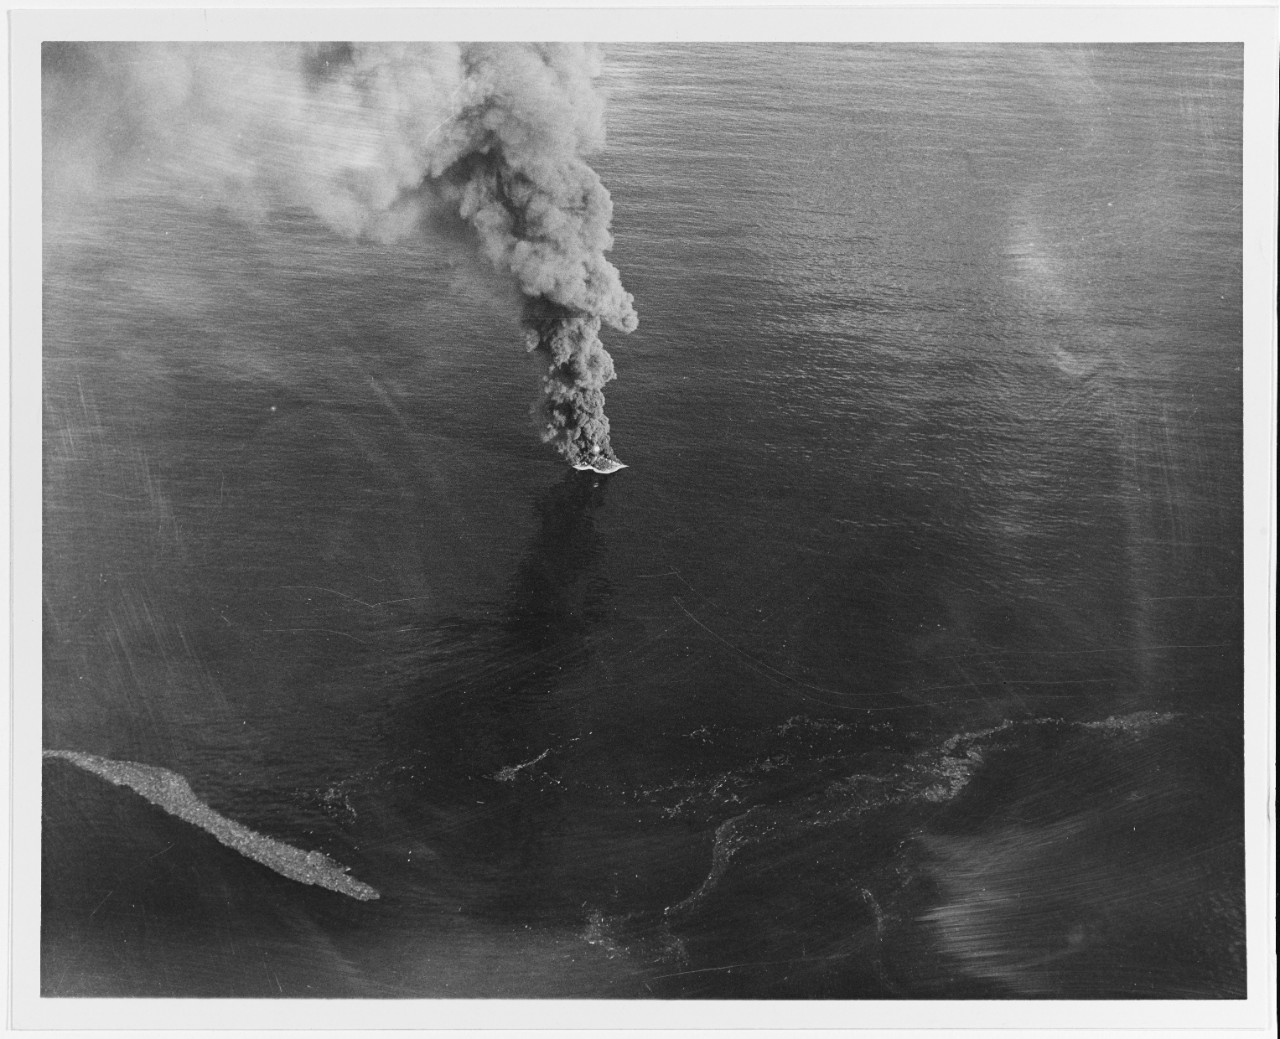 USS DENVER (CL-58) sinking enemy warship, 25 October 1944.